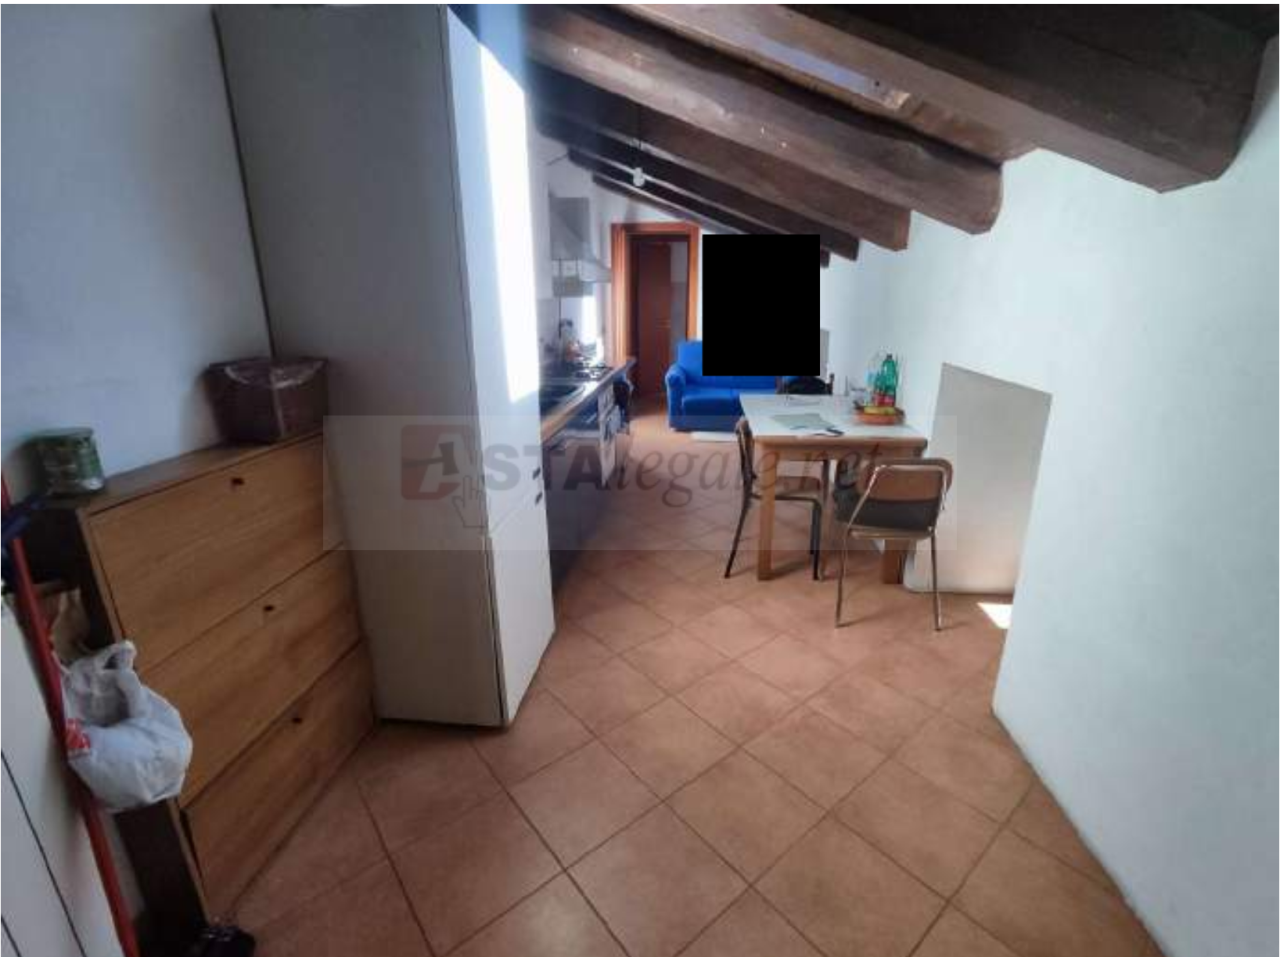 Appartamento in vendita a Dovadola, 2 locali, prezzo € 34.500 | PortaleAgenzieImmobiliari.it